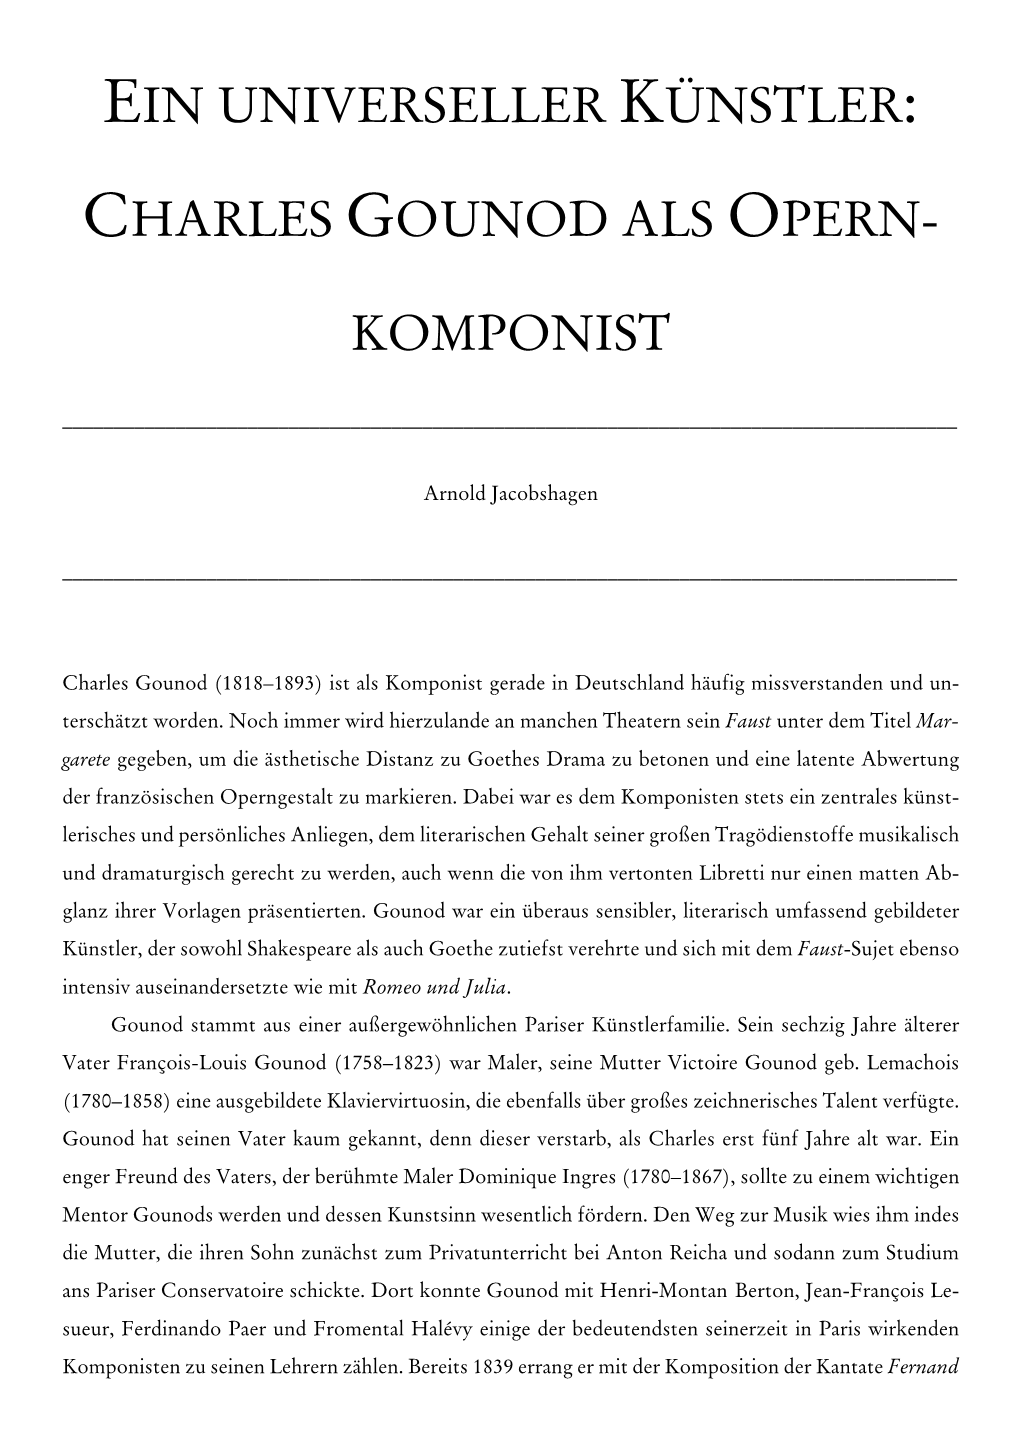 Charles Gounod Als Opern